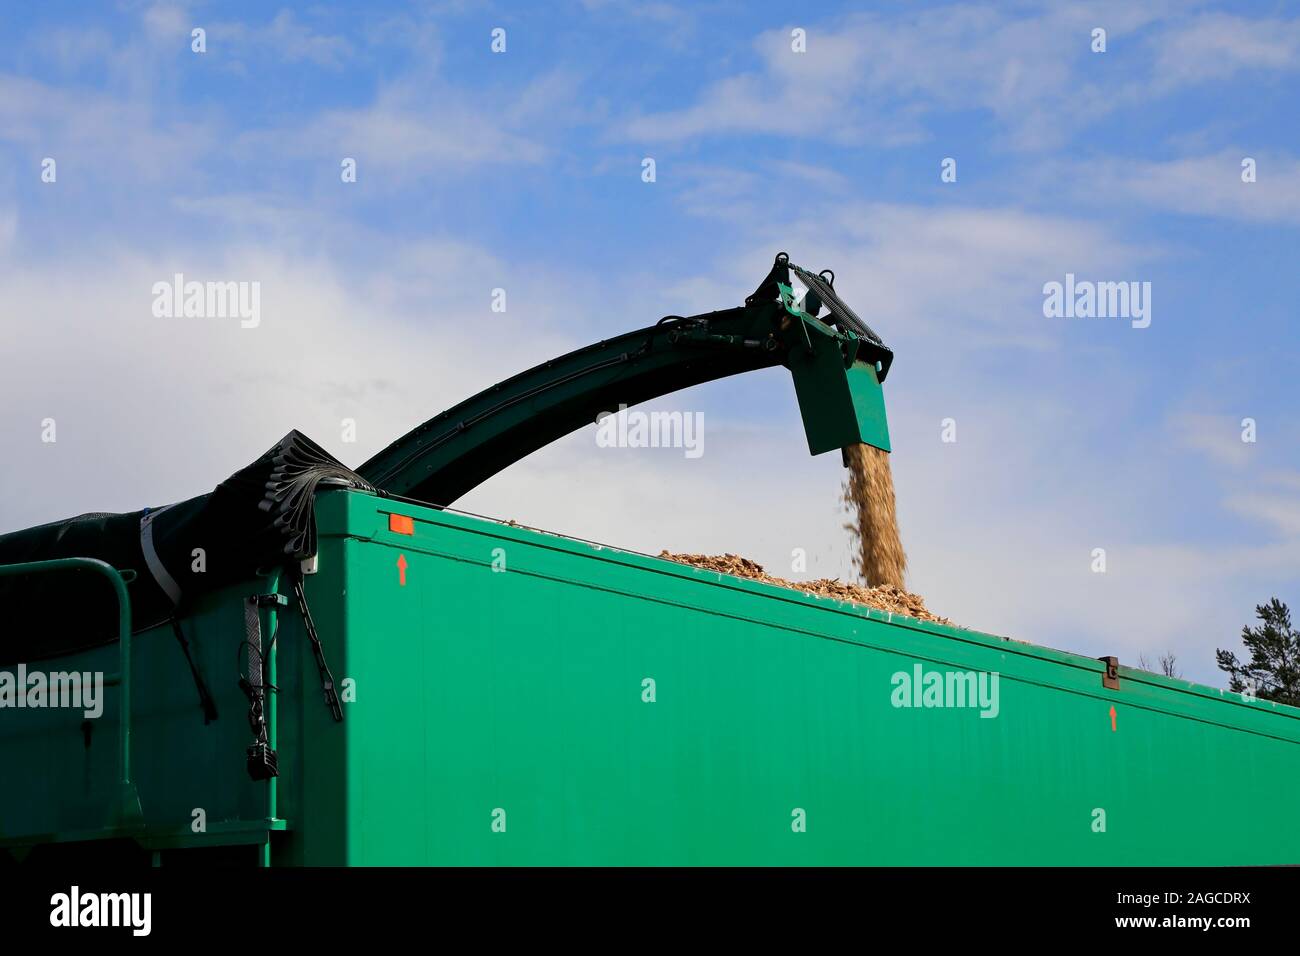 Mobile wood Chipper in Aktion abbricht und laden Rauhfaser auf grün Anhänger. Hintergrund der blauen Himmel und weißen Wolken, kopieren Raum oben auf Bild. Stockfoto